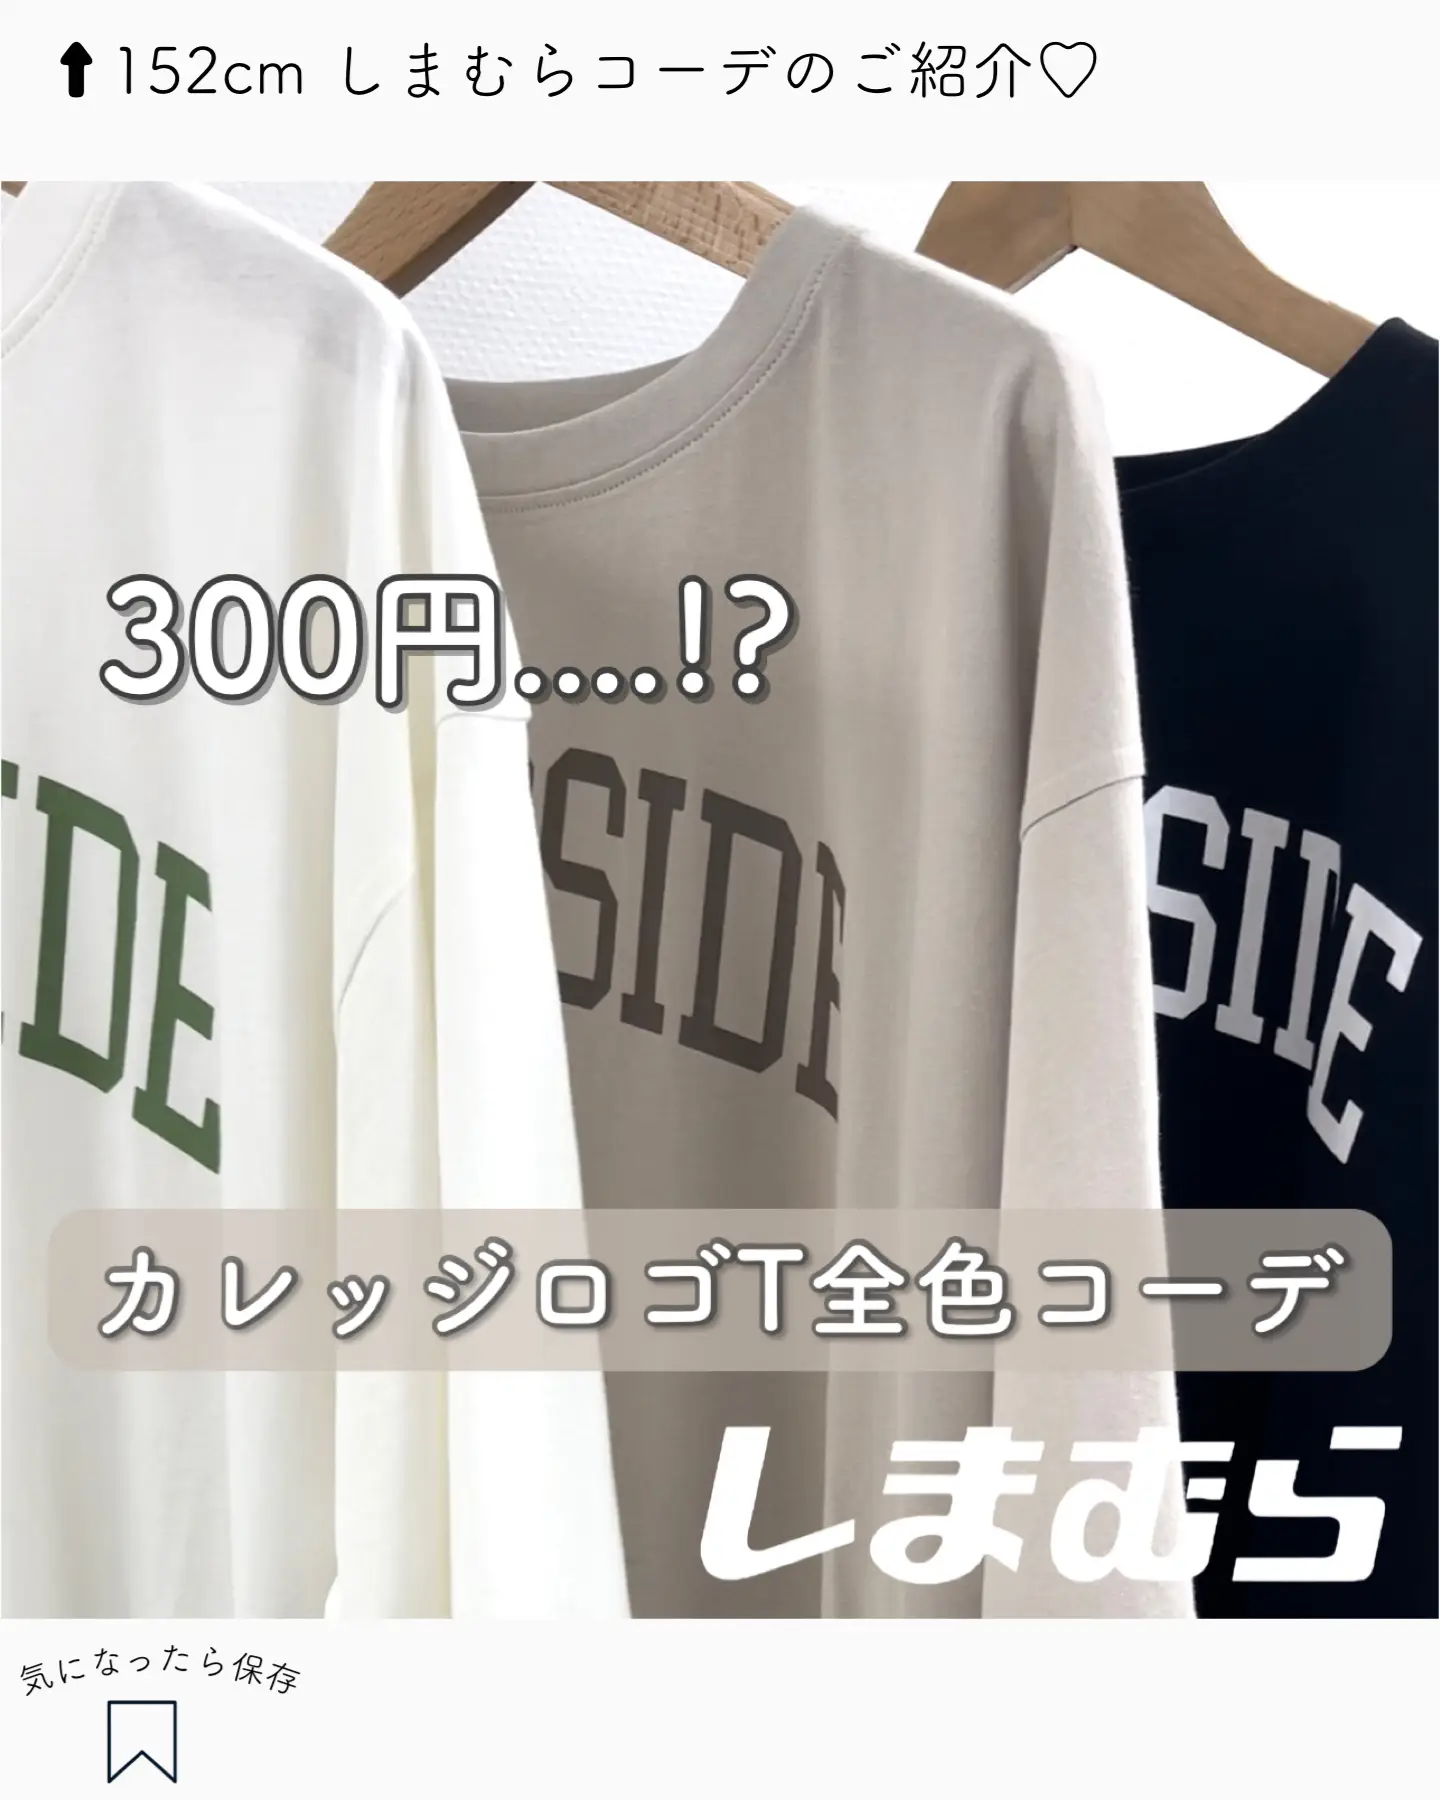 39,999円Tシャツ 重ねてみた参考お写真です。